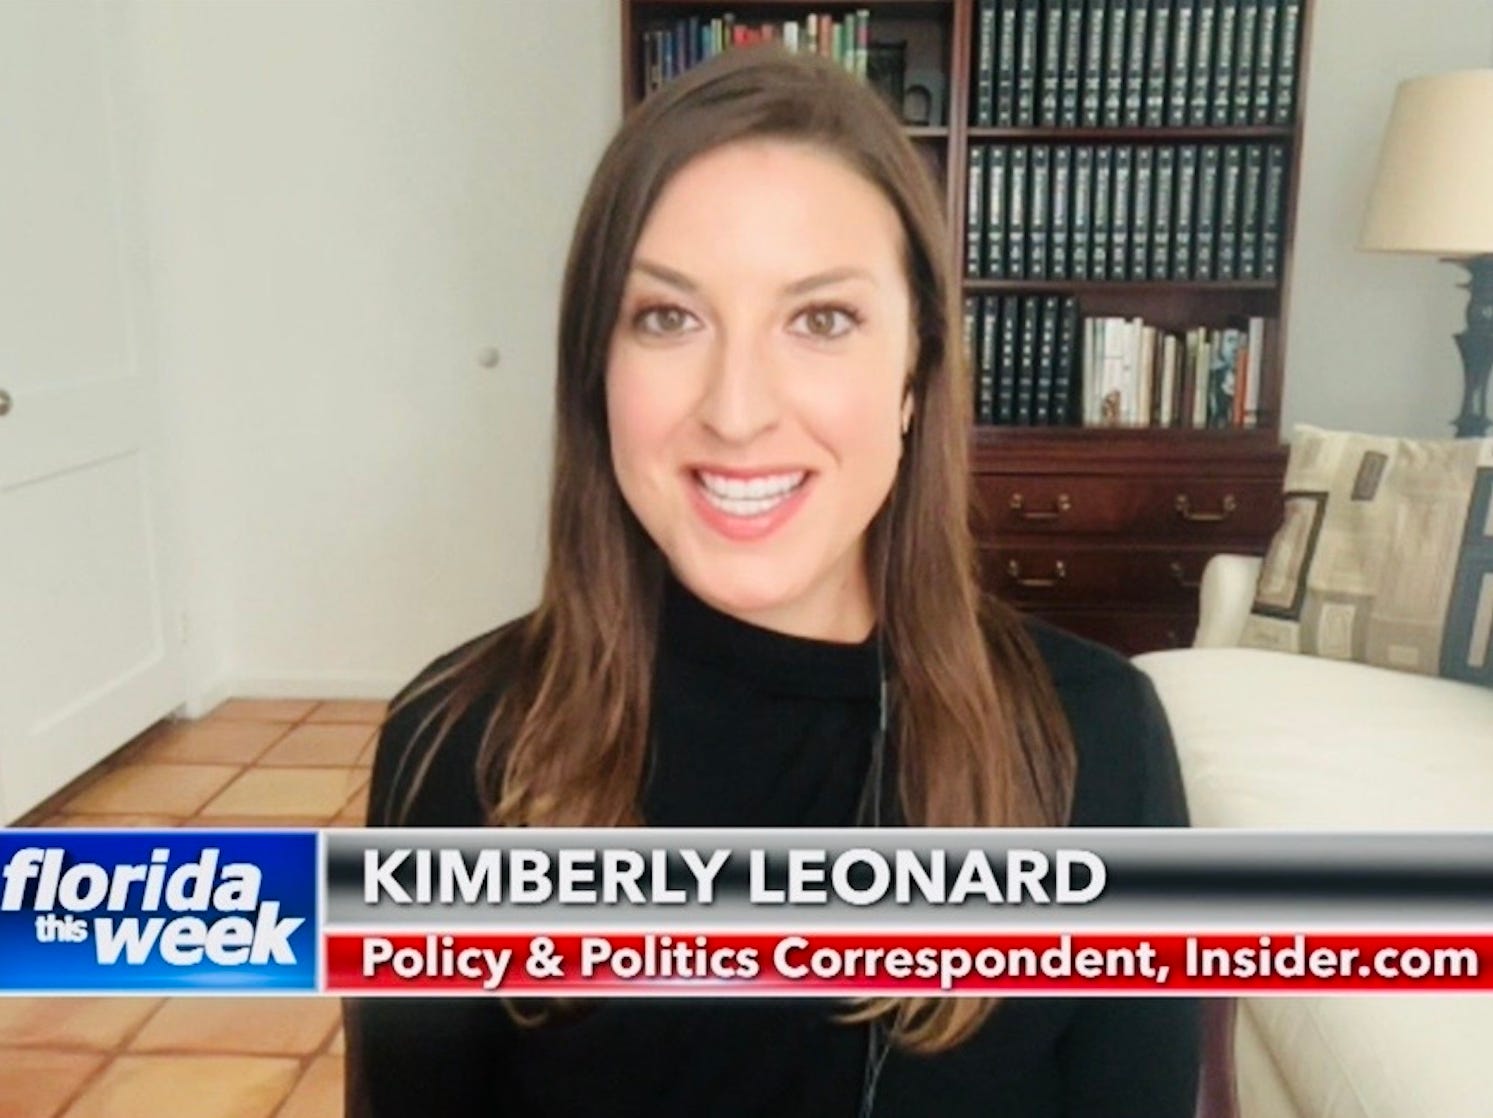 Die Autorin, Kimberly Leonard, ist leitende Politikkorrespondentin für Insider mit Sitz in Südflorida.